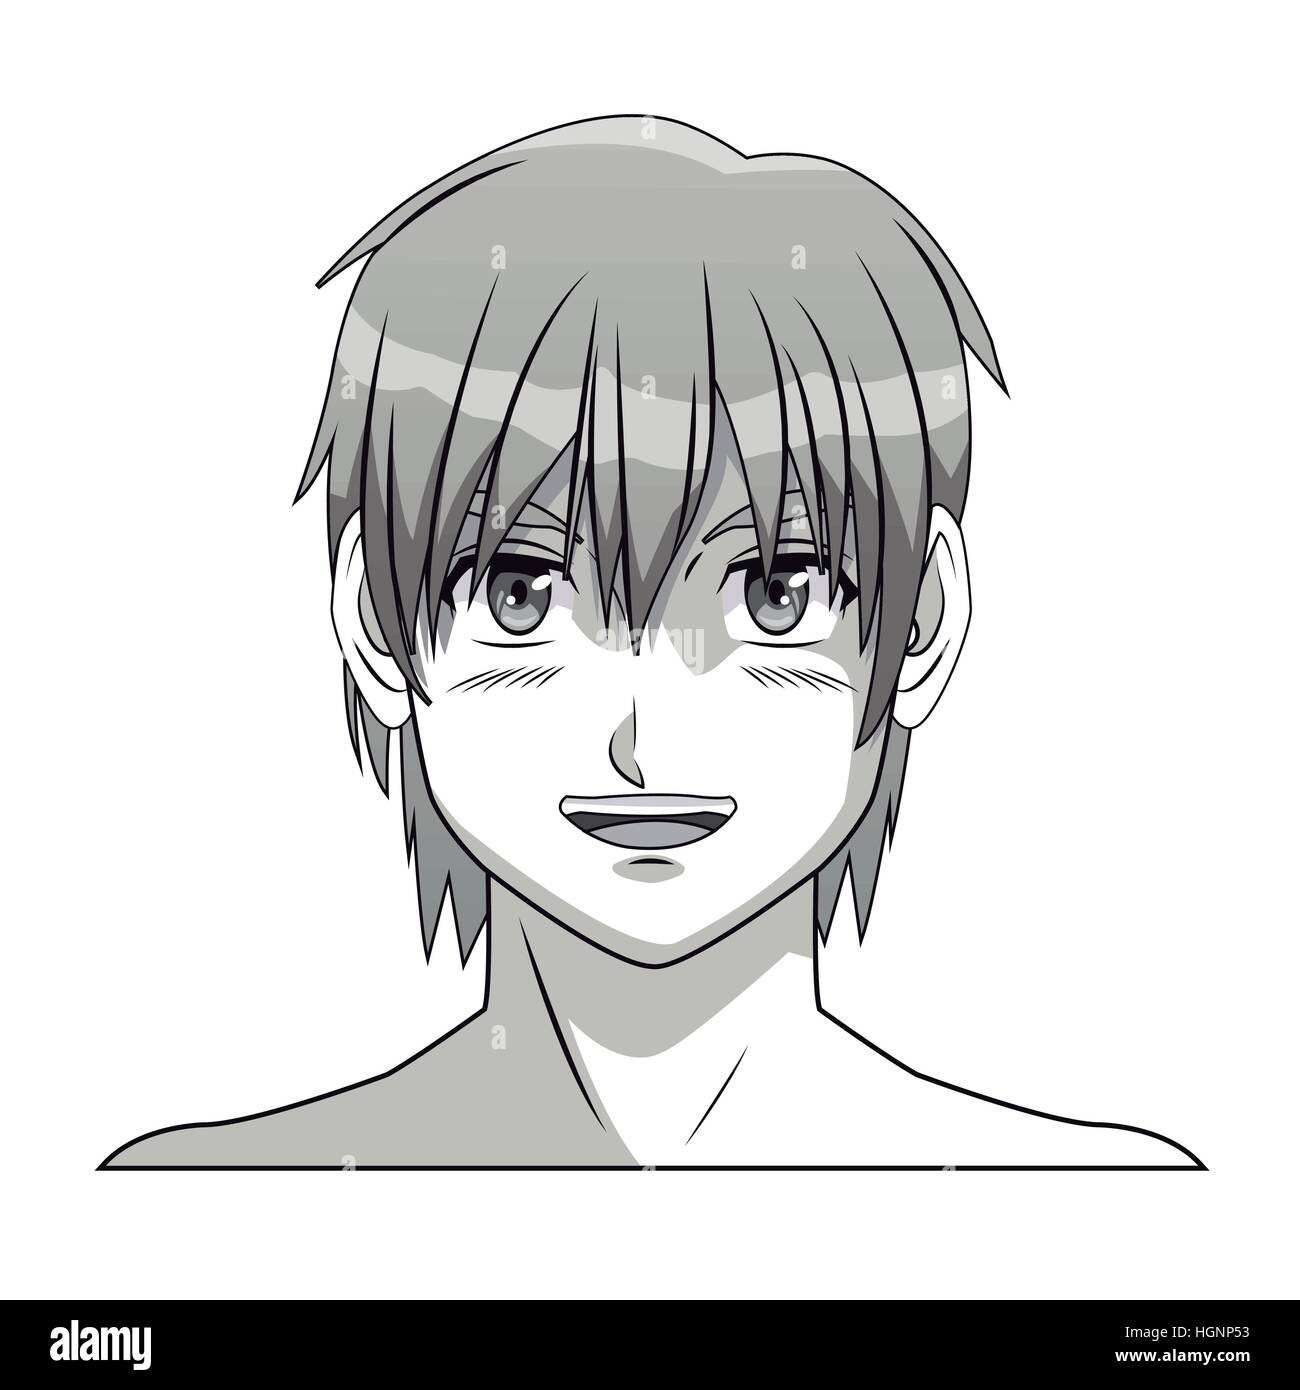 face boy anime manga comic smile young Stock Vector Image & Art - Alamy